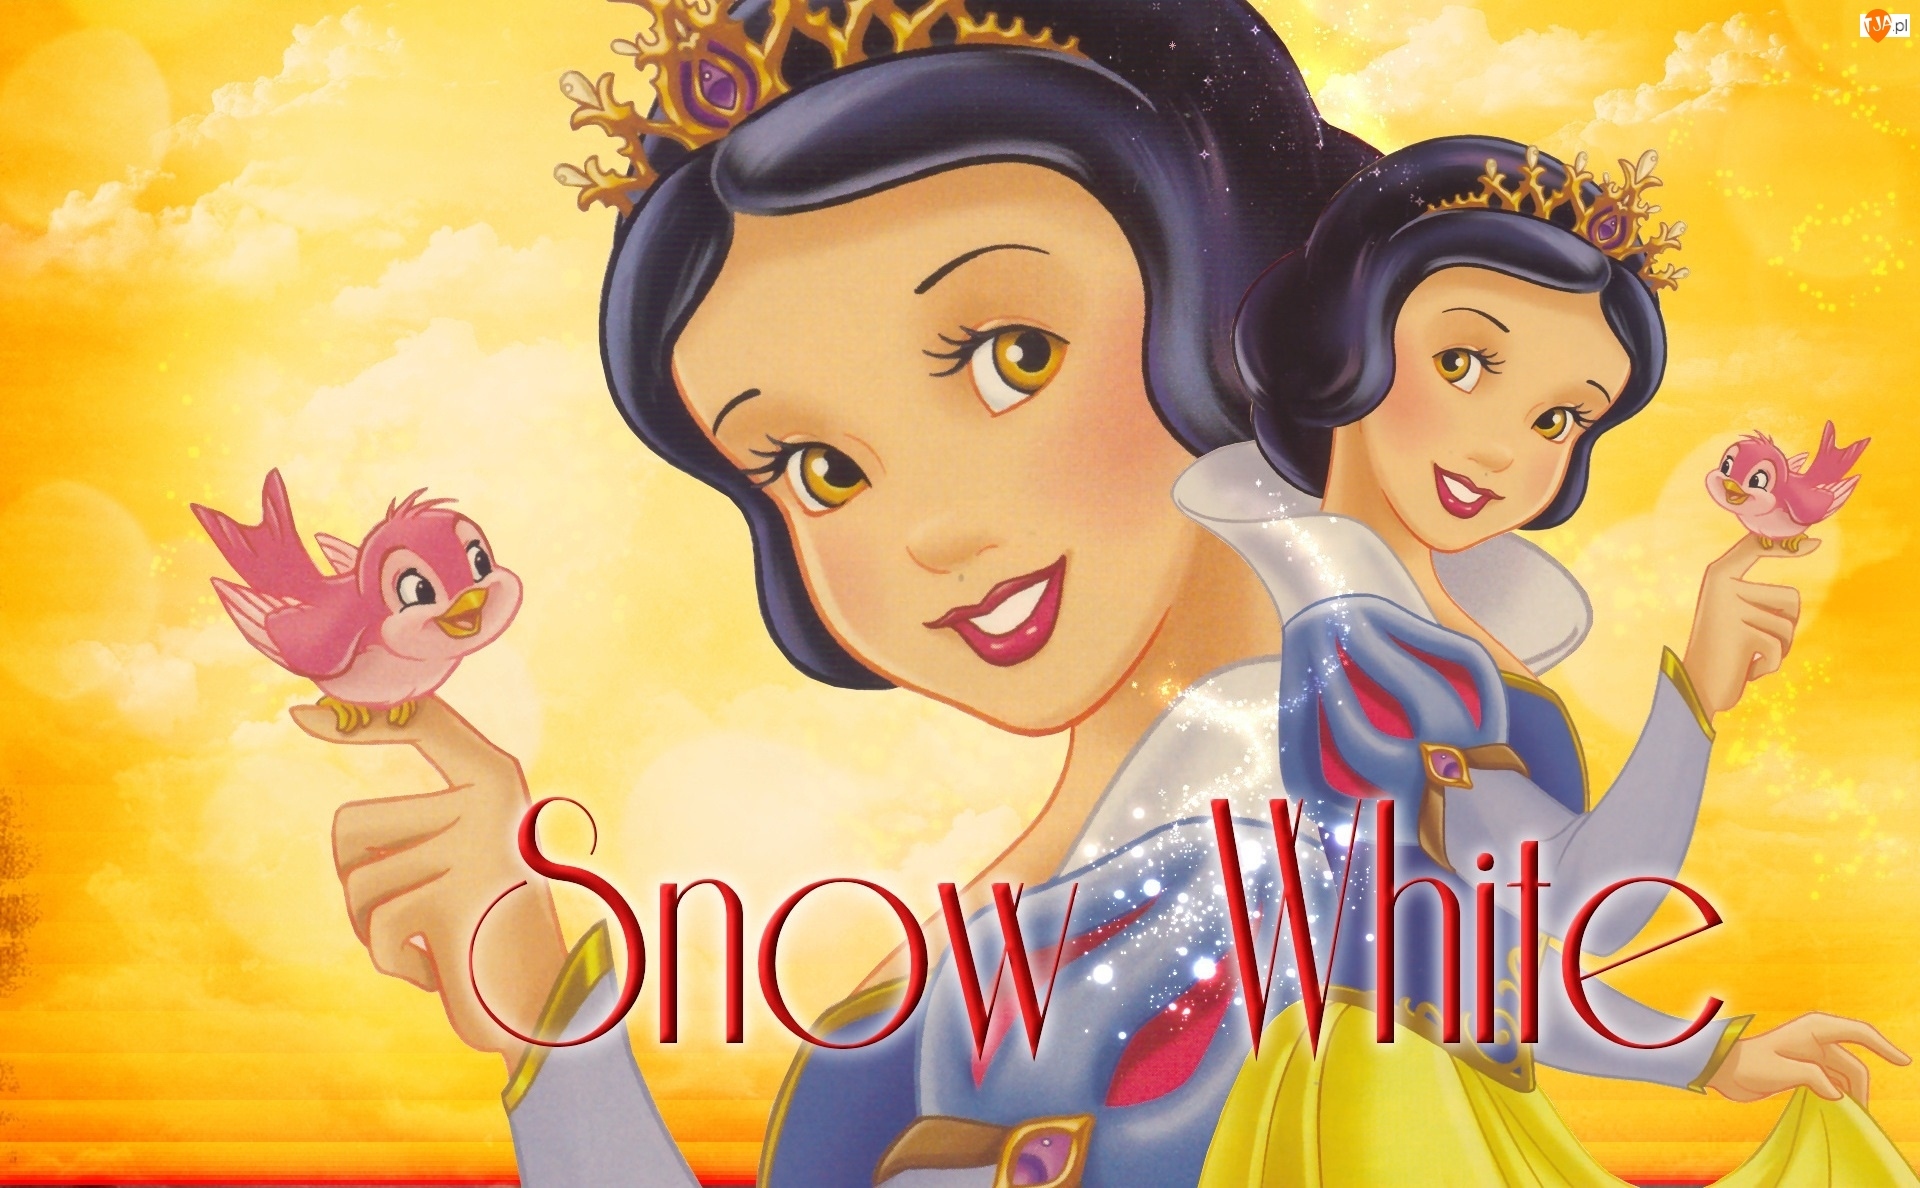 Snow White and the Seven Dwarfs, Bajka, Królewna Śnieżka i siedmiu krasnoludków